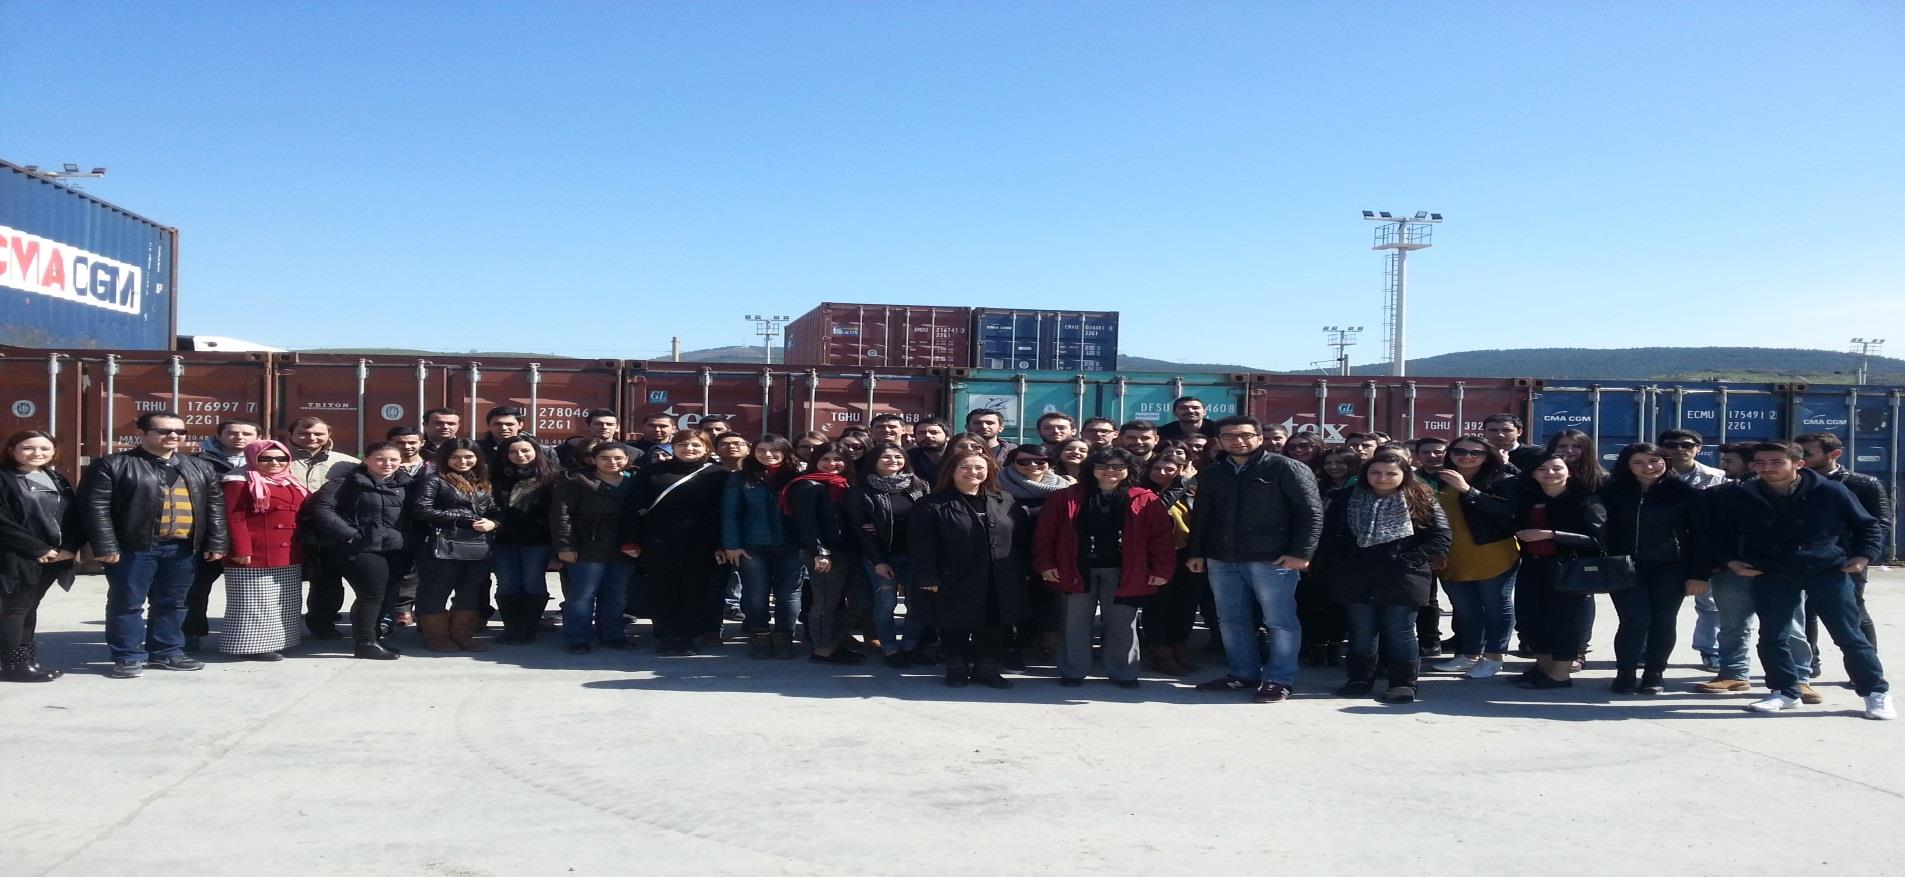 Nemport Liman Gezisi, 18 Mart 2015 Lojistik Yönetimi Bölümü öğrencilerimizin ve